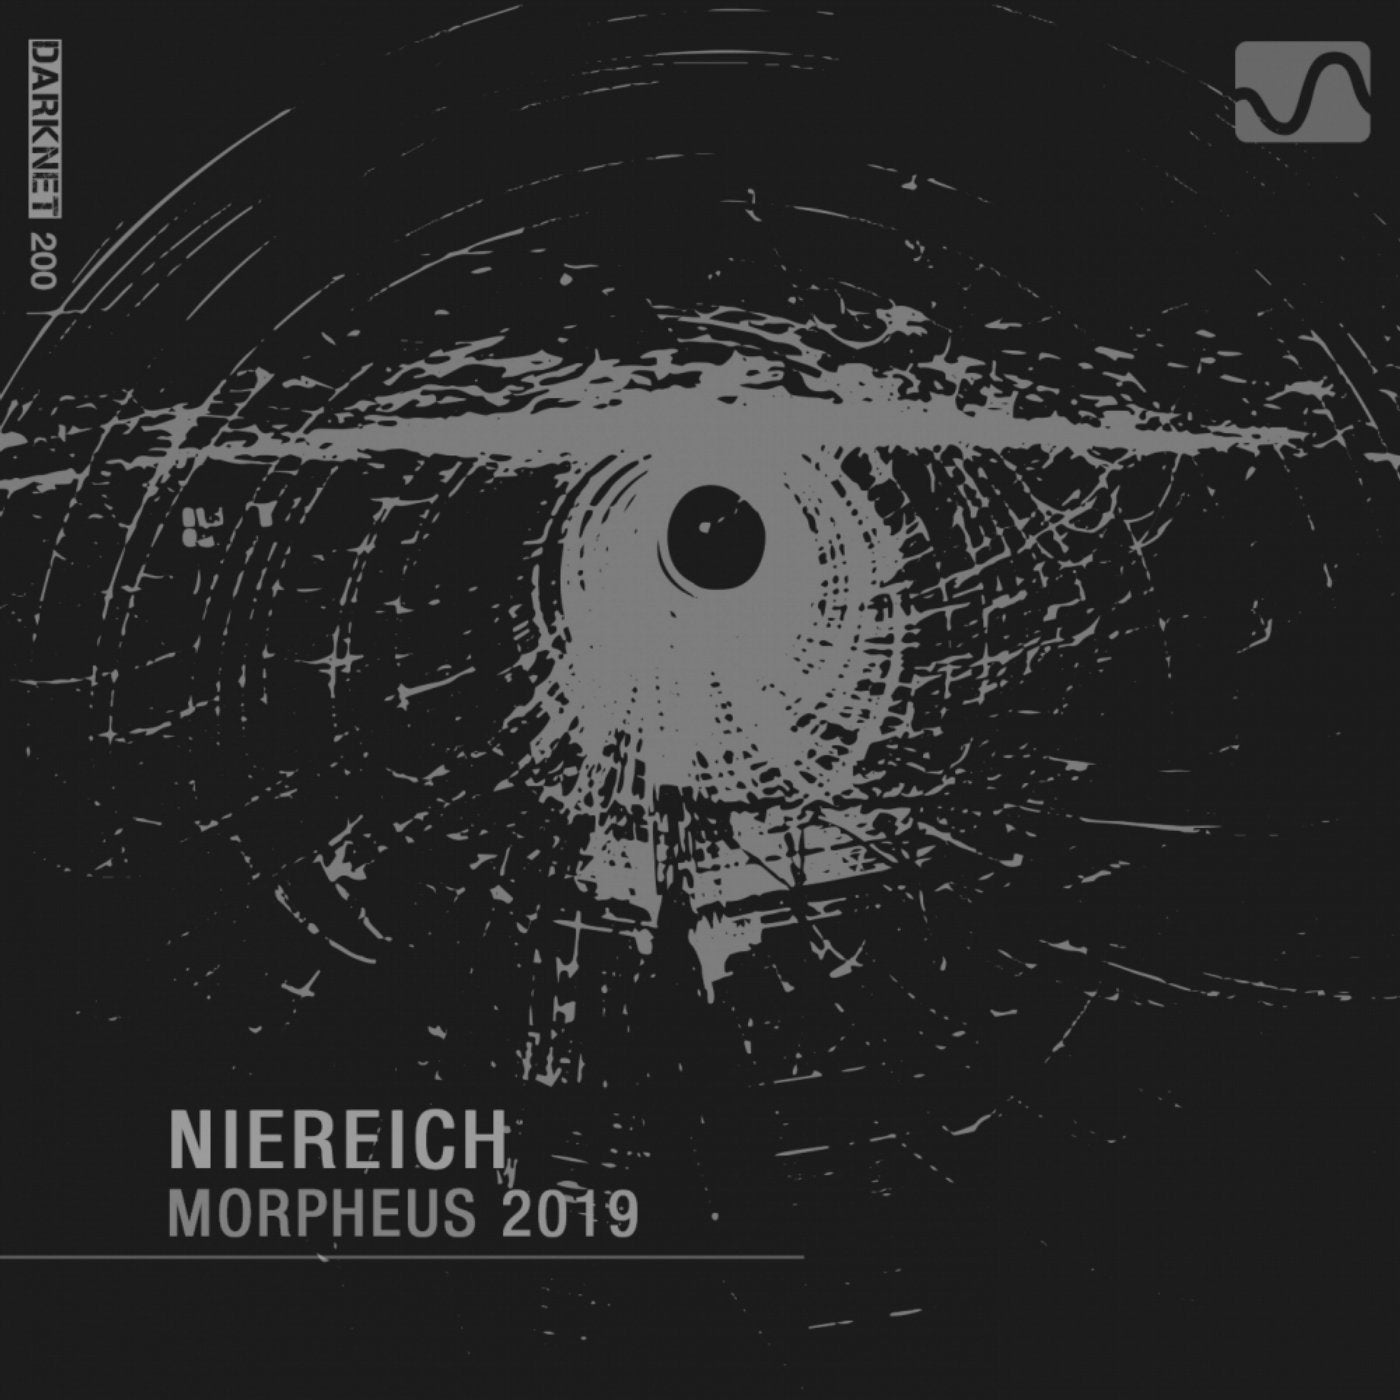 Morpheus 2019